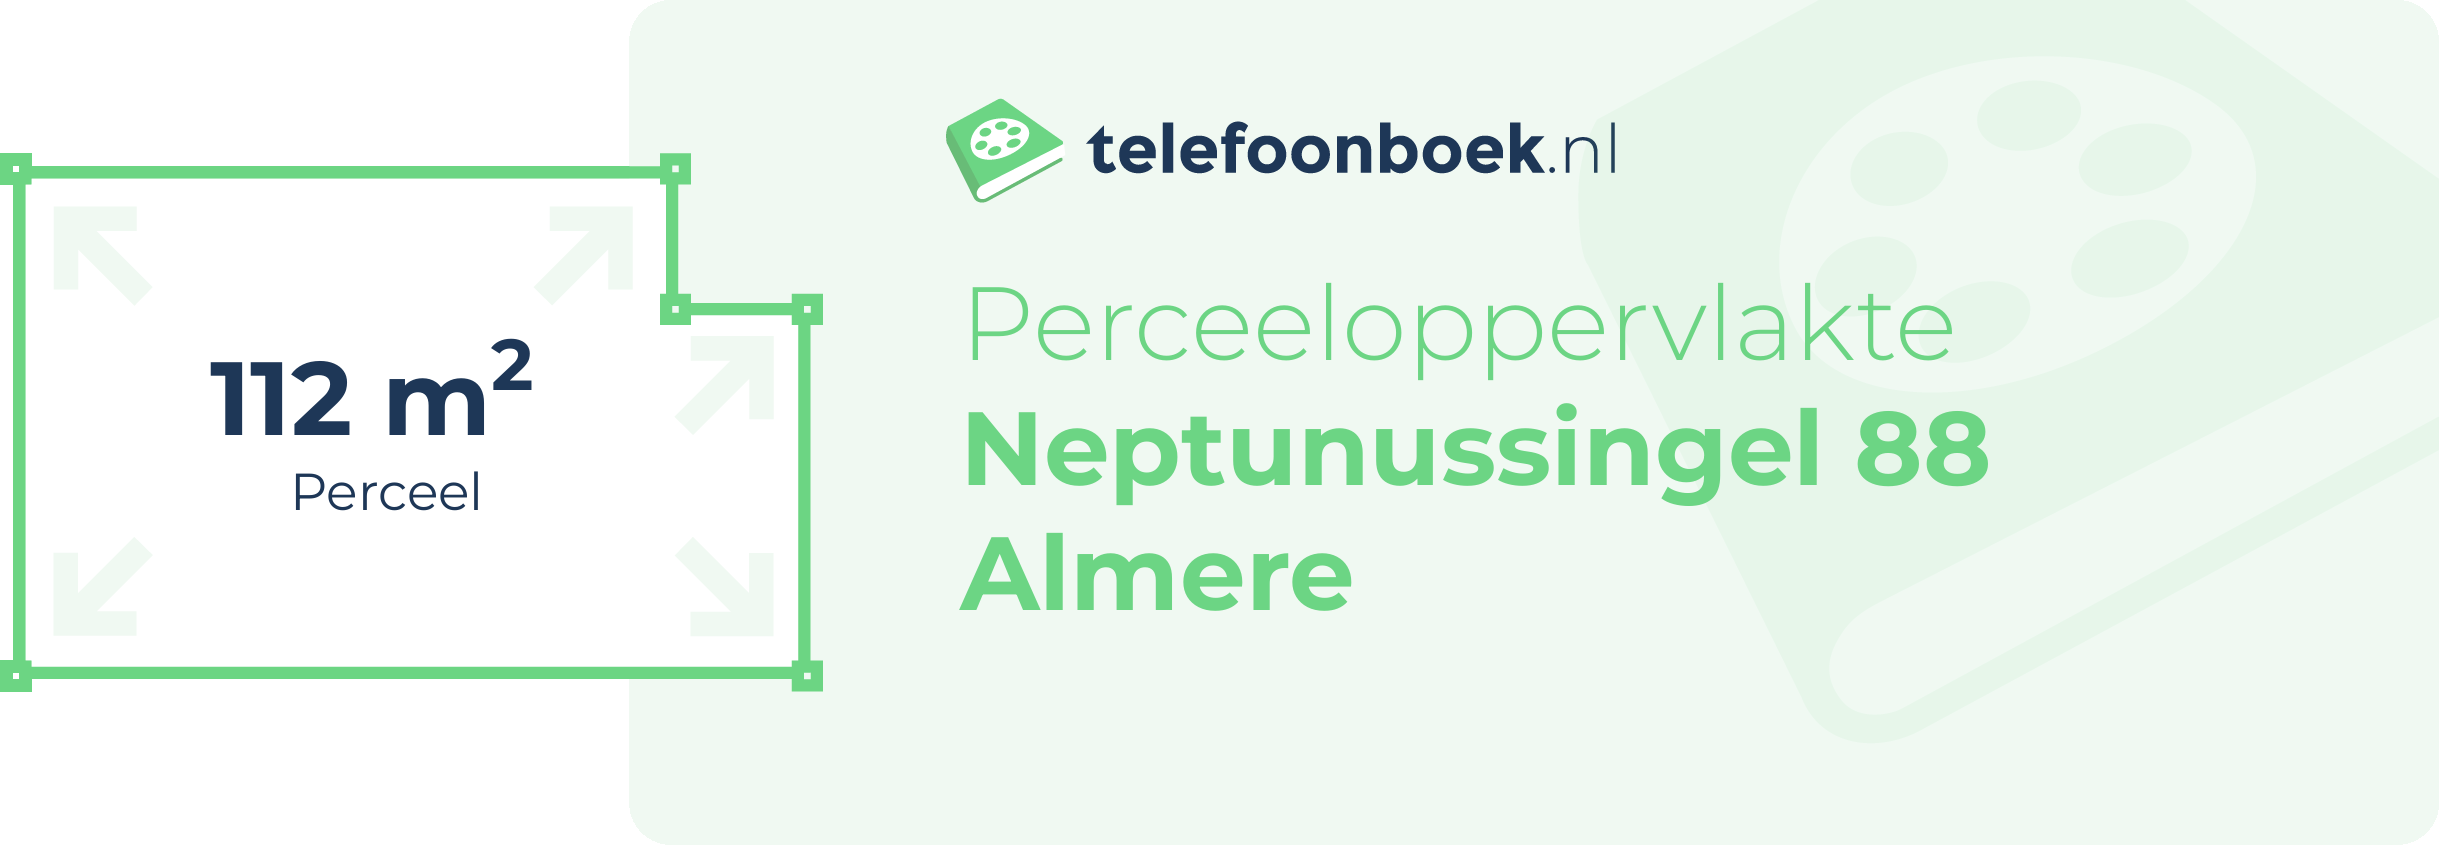 Perceeloppervlakte Neptunussingel 88 Almere